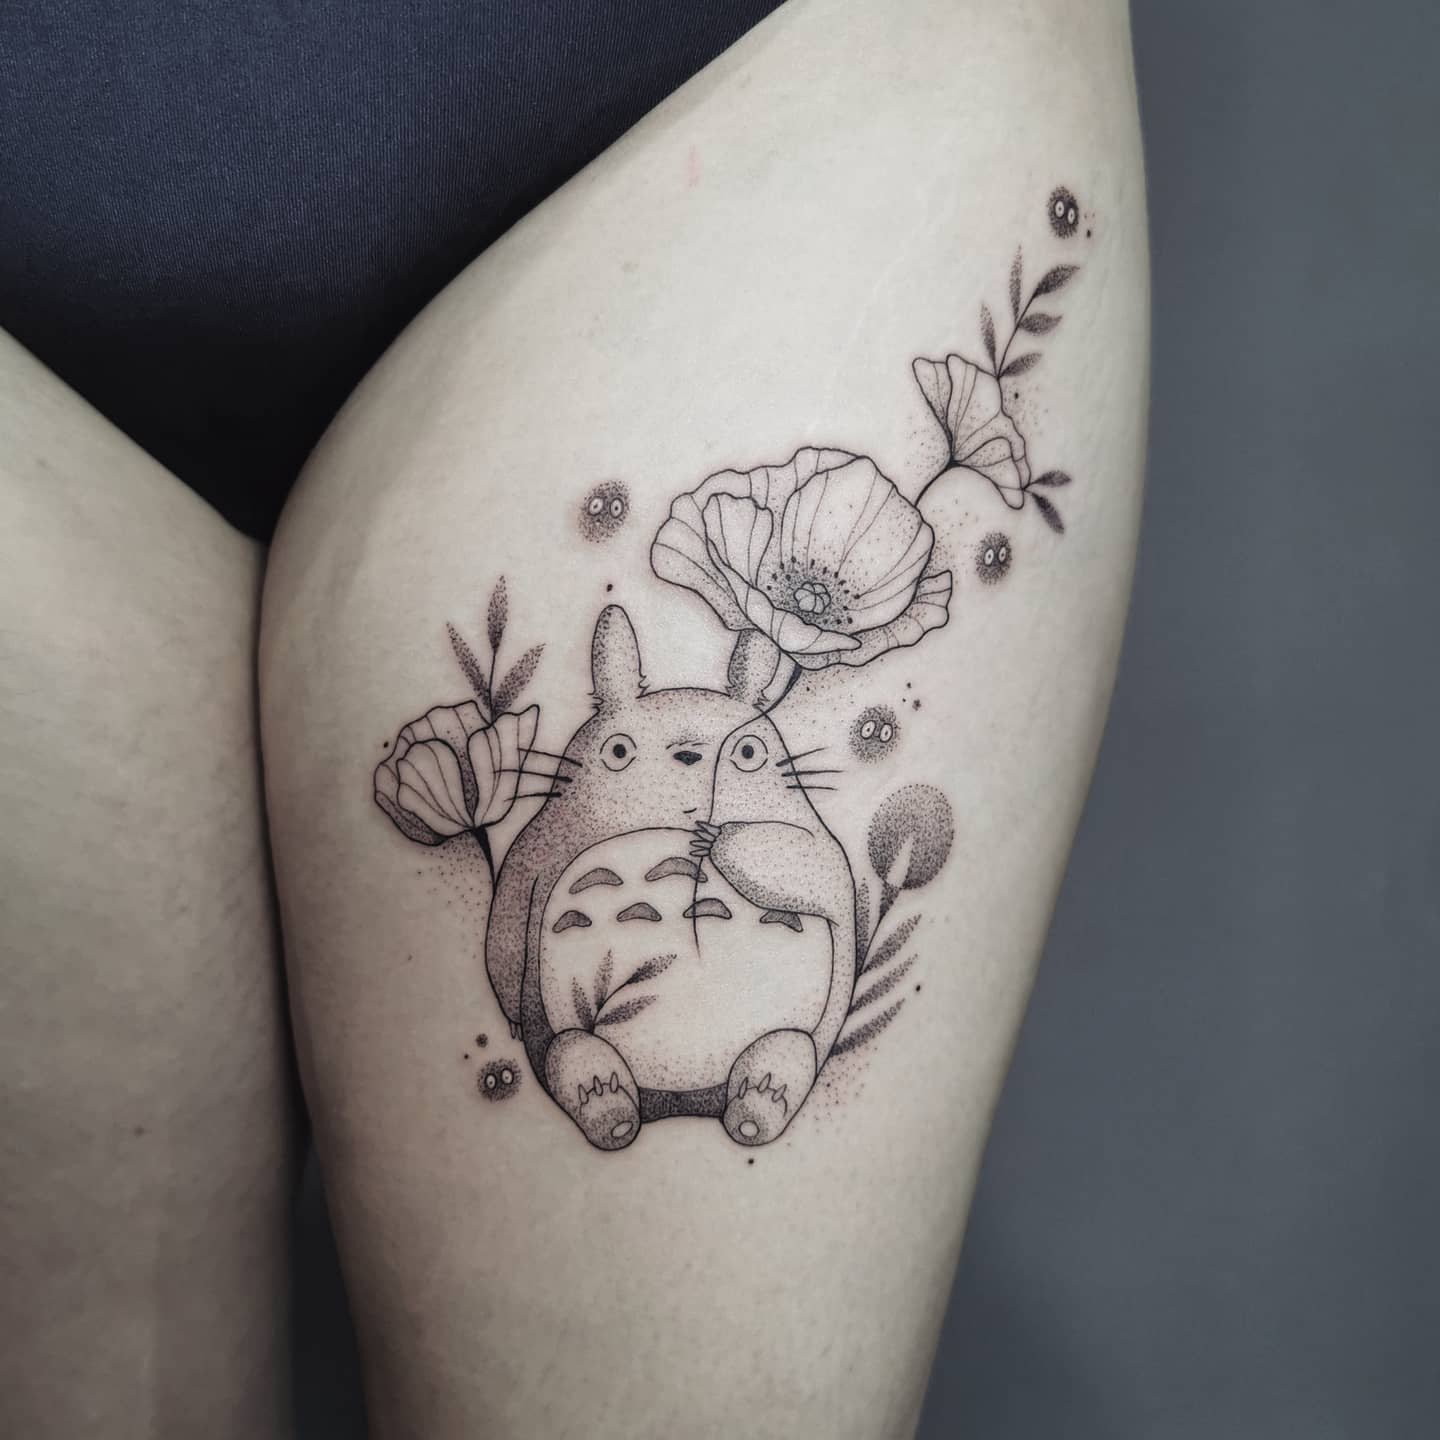 Totoro Studio Ghibli Tattoo -tattoosbydaisy